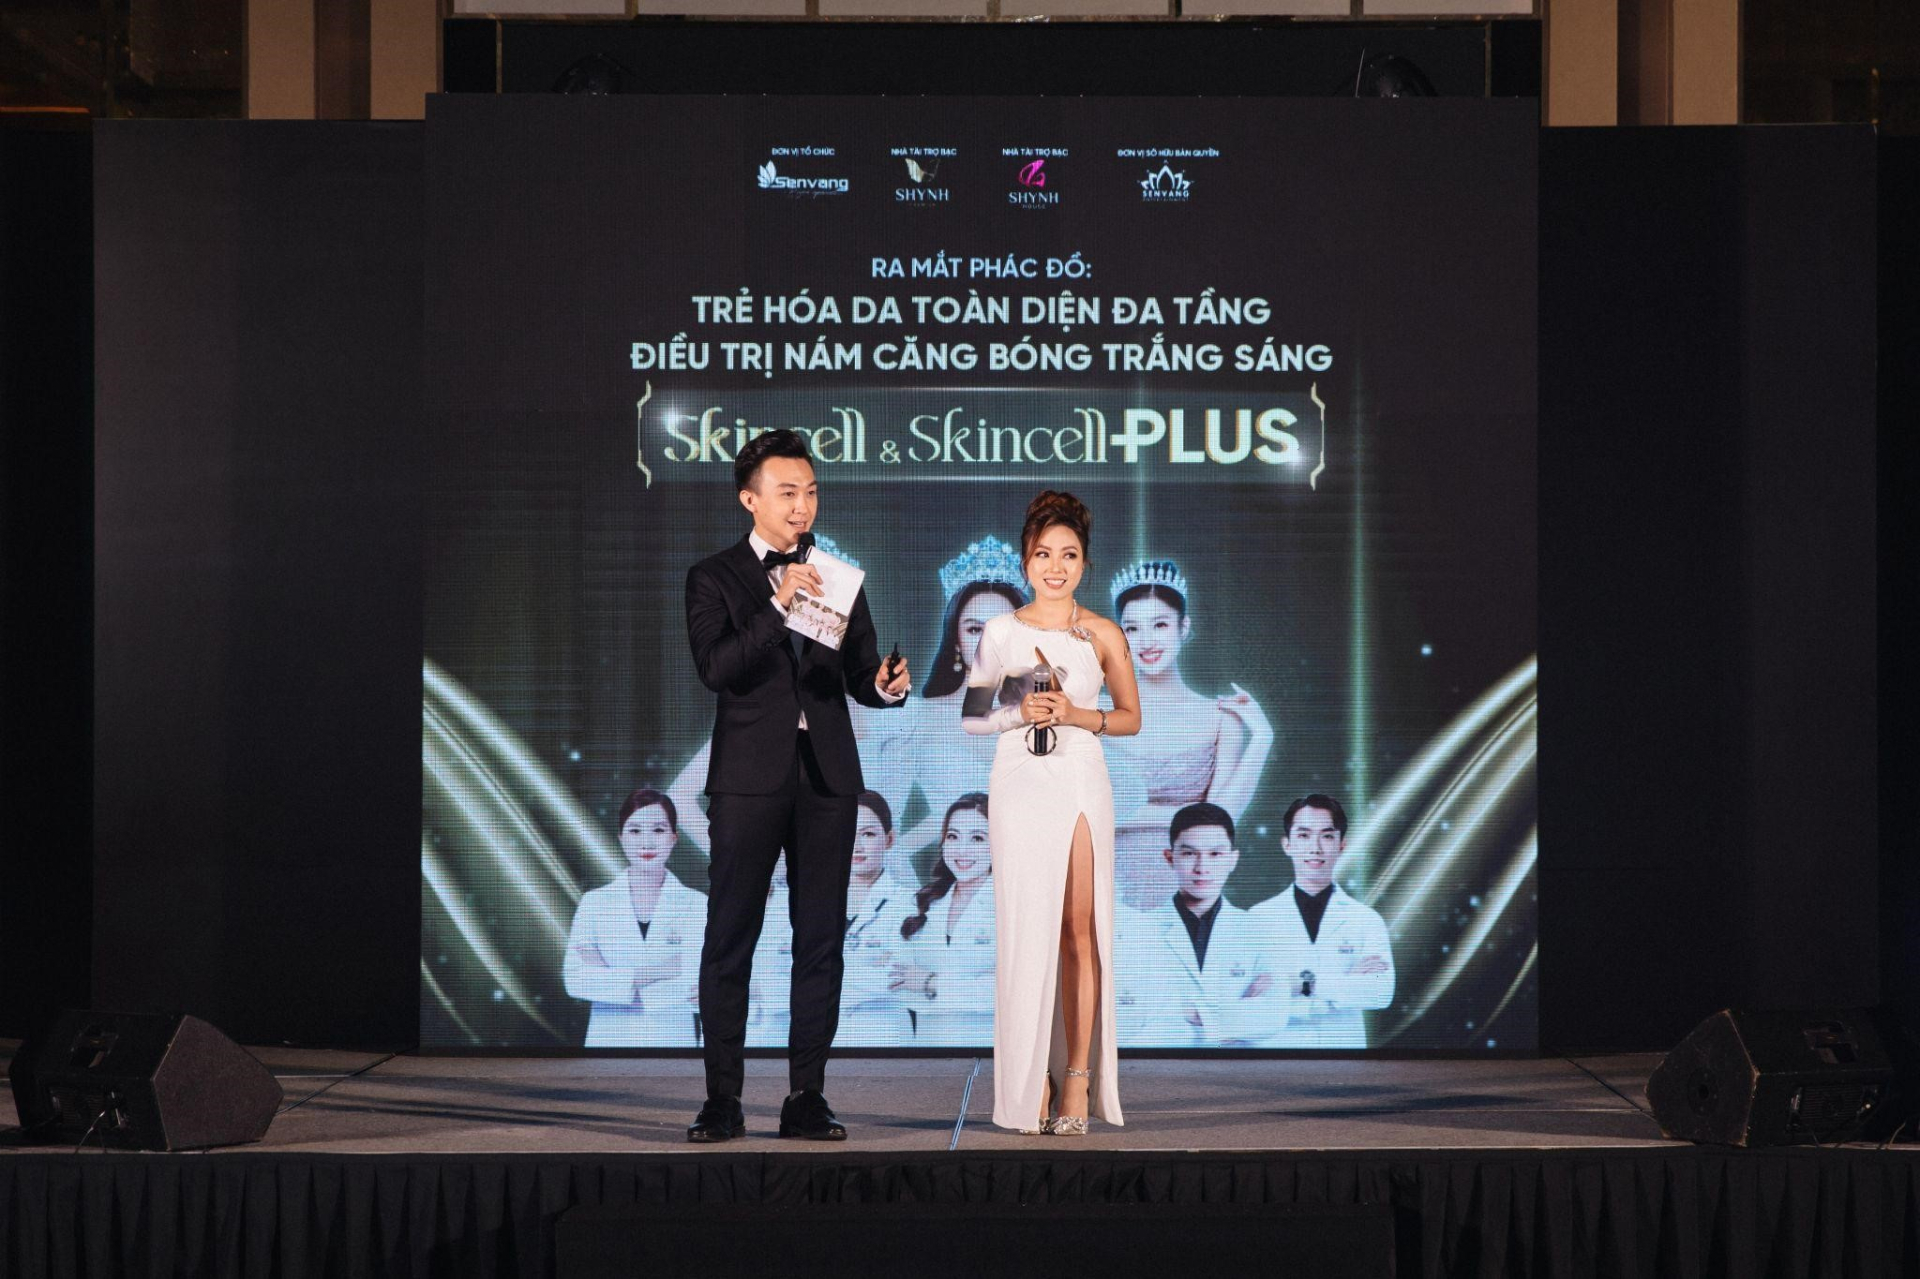 Shynh Premium ra mắt phác đồ Trẻ hóa da đa tầng - Điều trị nám căng bóng trắng sáng Skincell & Skincell Plus - ảnh 1